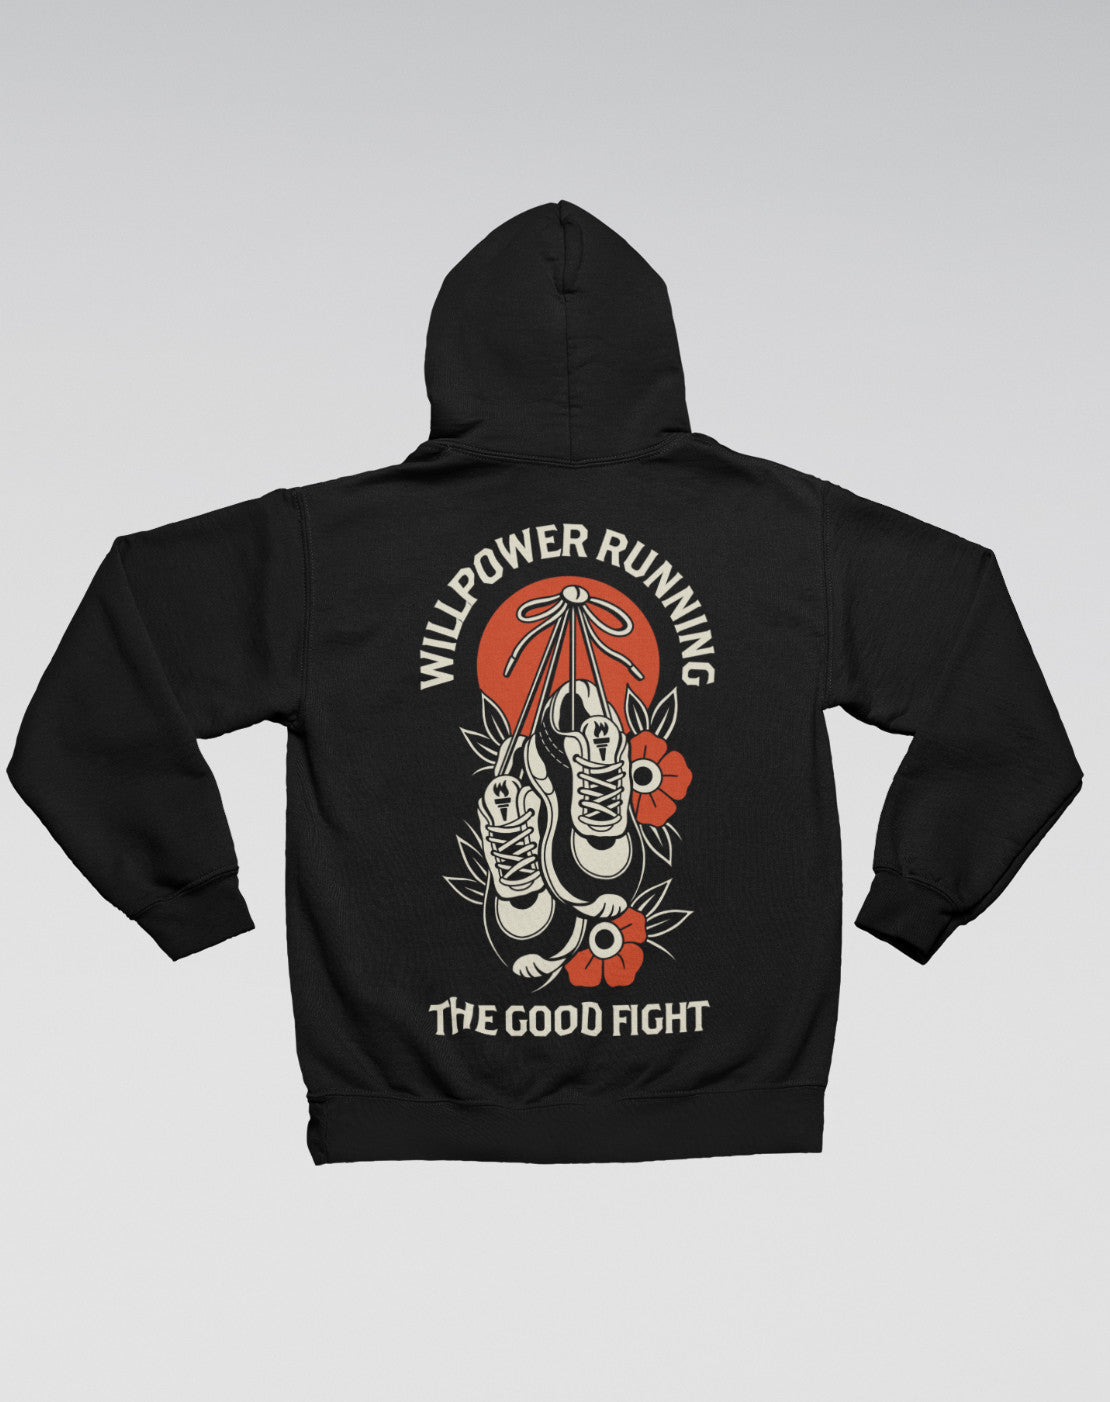 "The Good Fight" Zipper